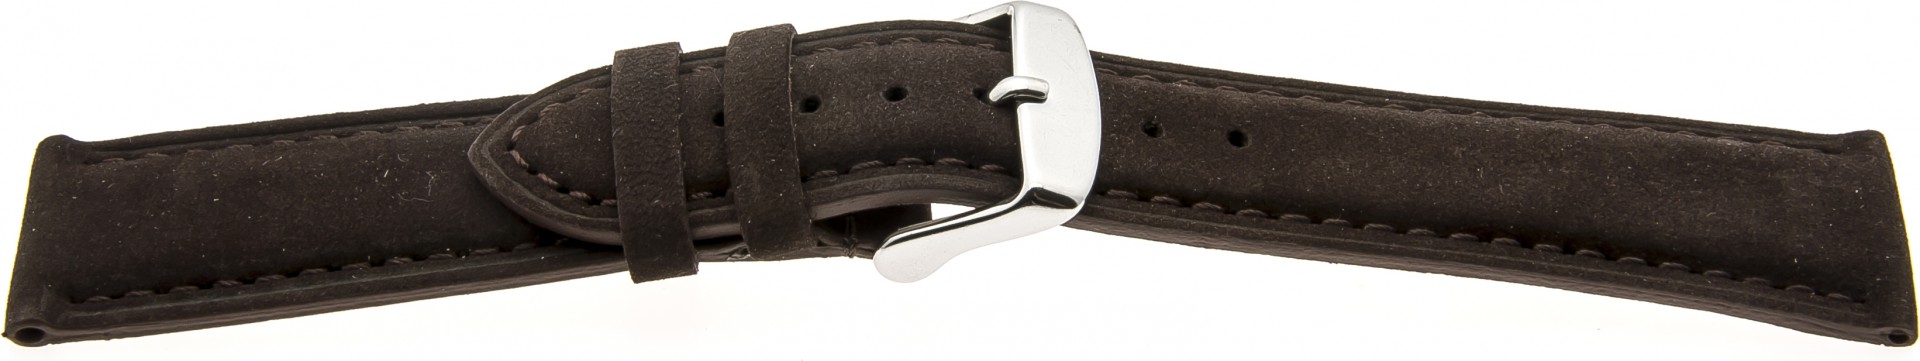   Uhrenarmband Tennessee Dornschließe - Leder, genarbt - schwarz mit dunkelbrauner Naht 